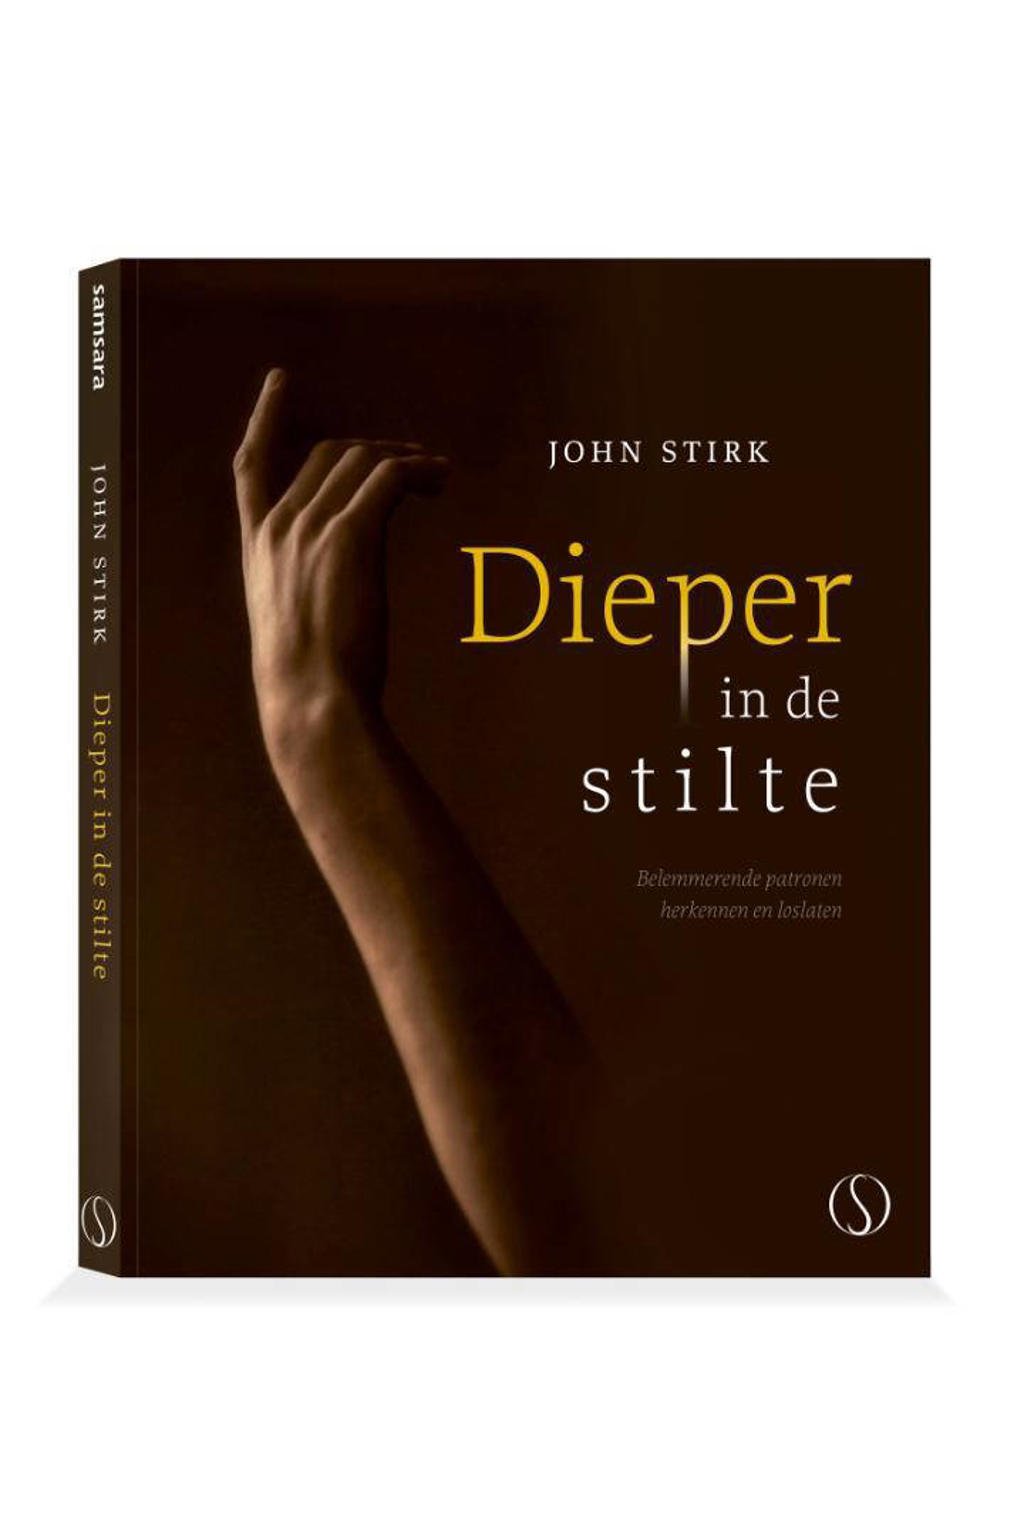 Dieper in de stilte - John Stirk